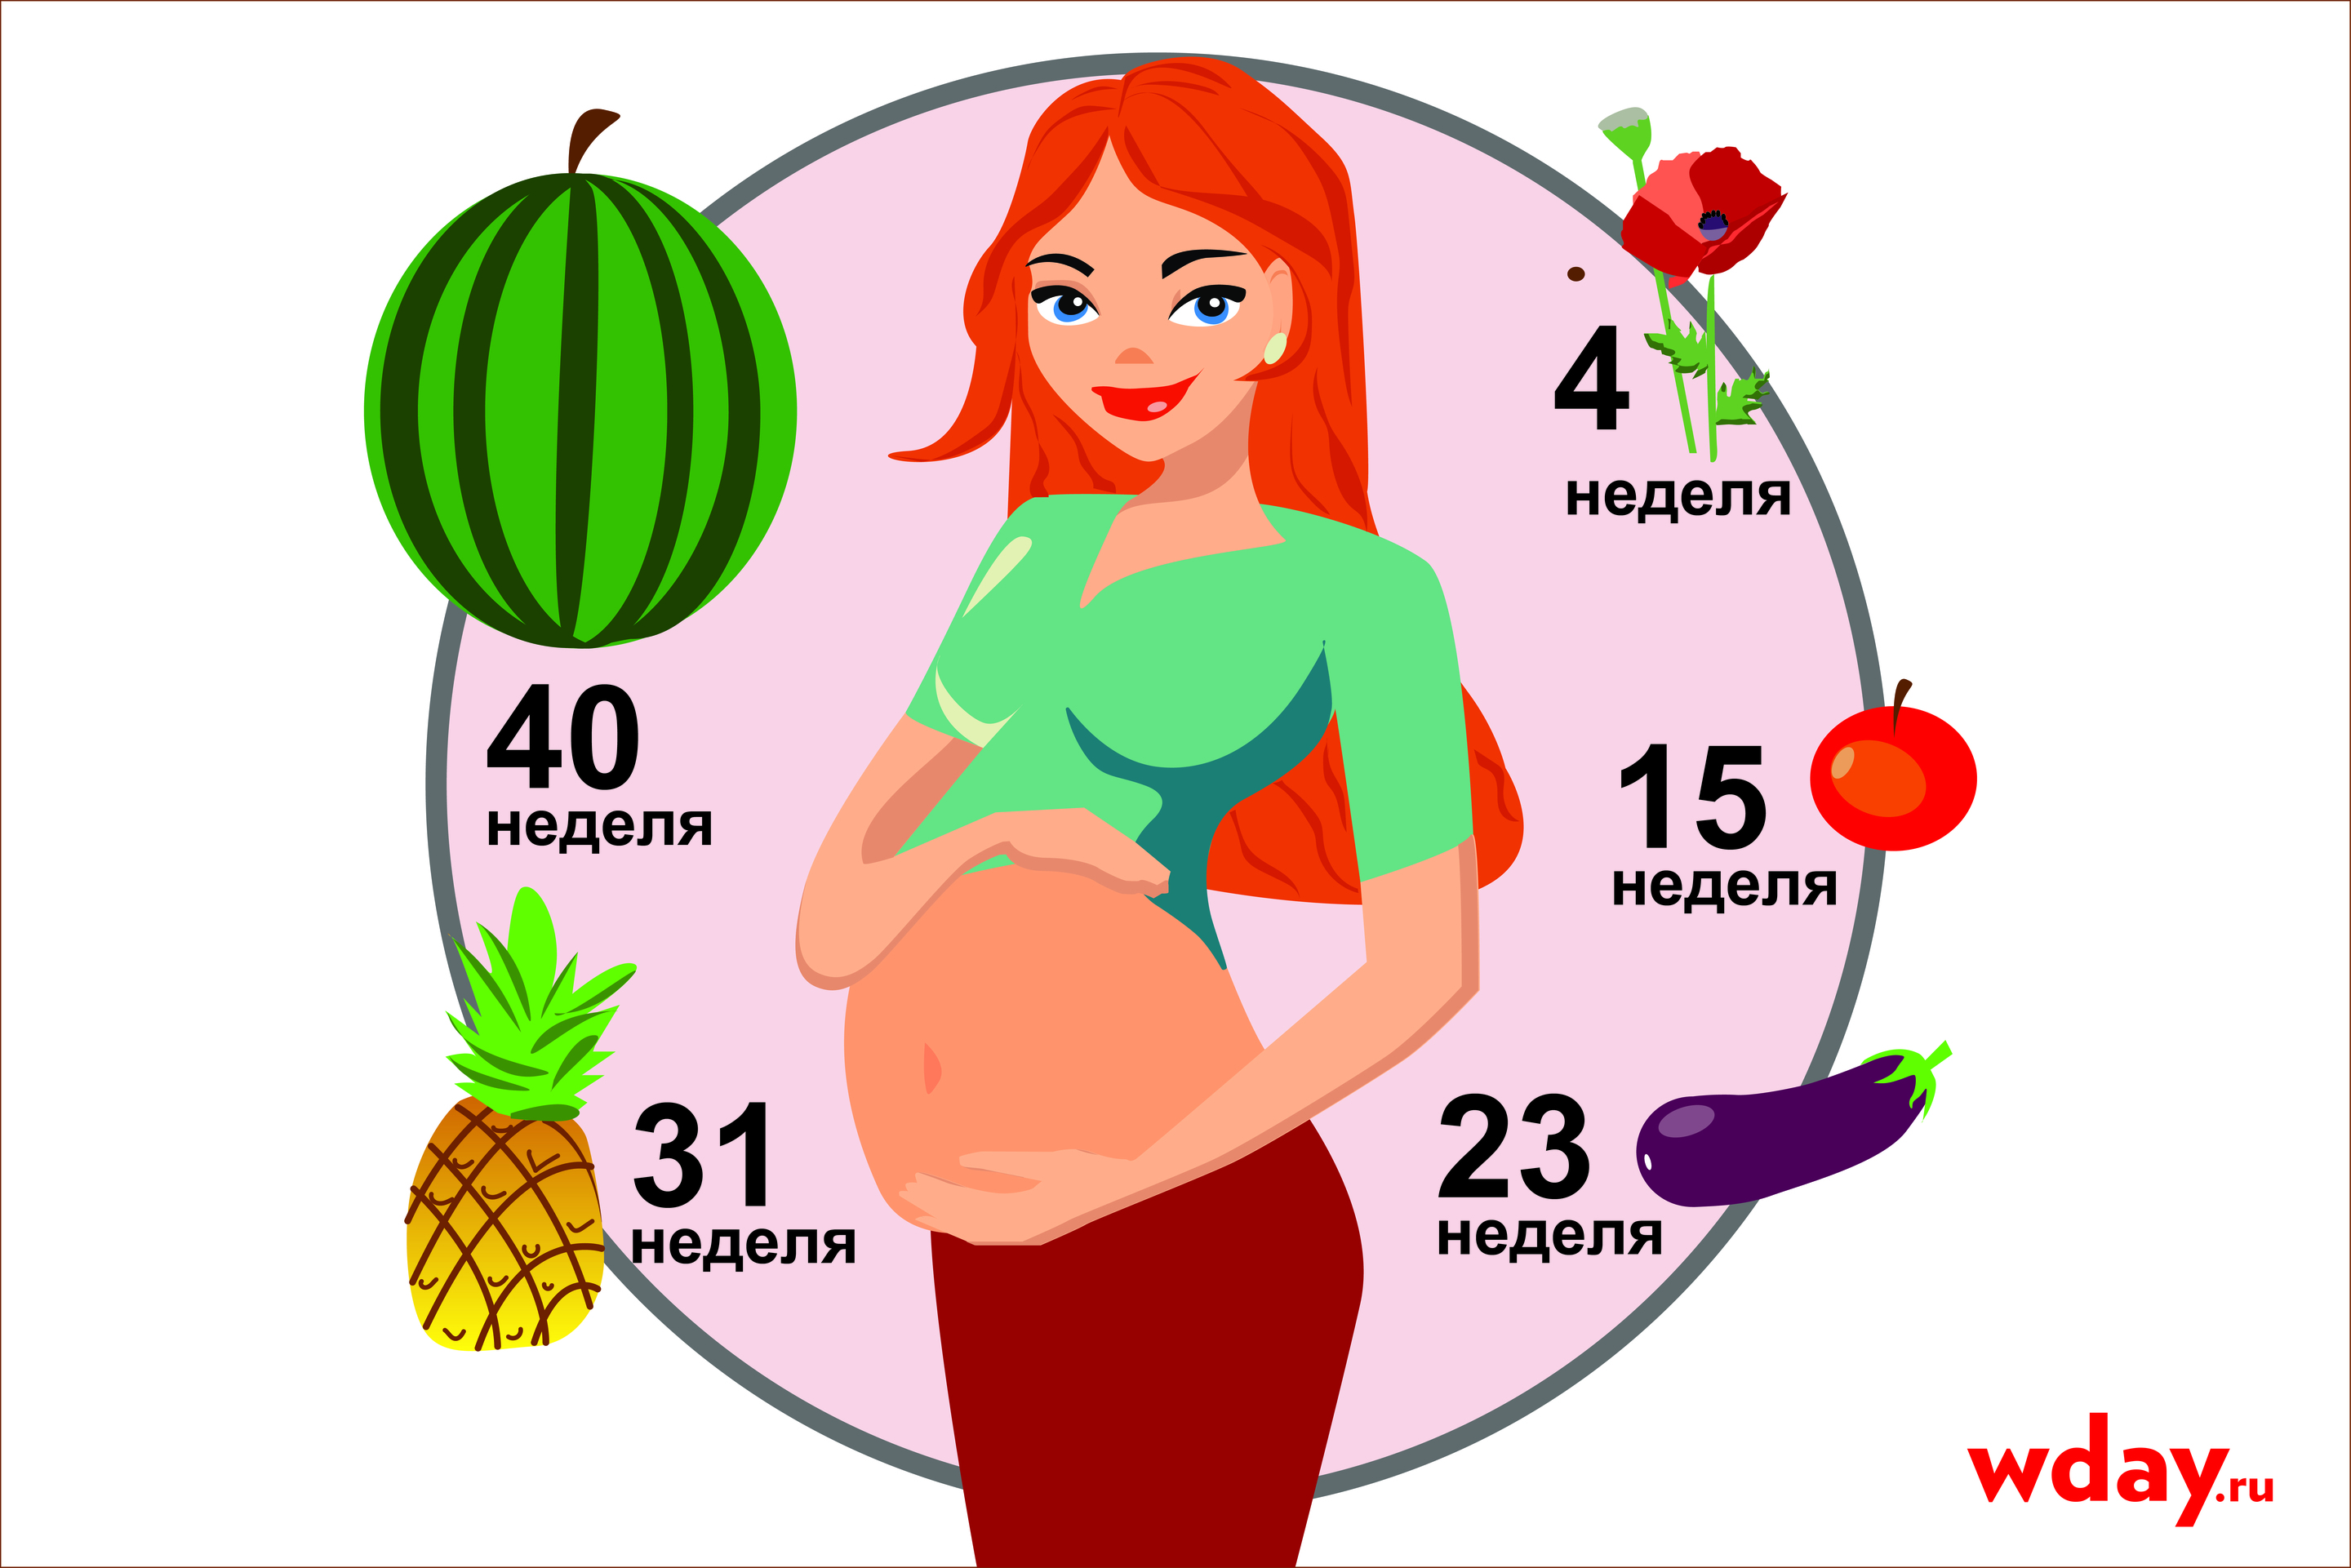 27 недель размер. Размер эмбриона по неделям фрукты. Размер зародыша по неделям беременности с фруктами. Размер плода по фруктам и овощам. Размеры плода по неделям фрук.